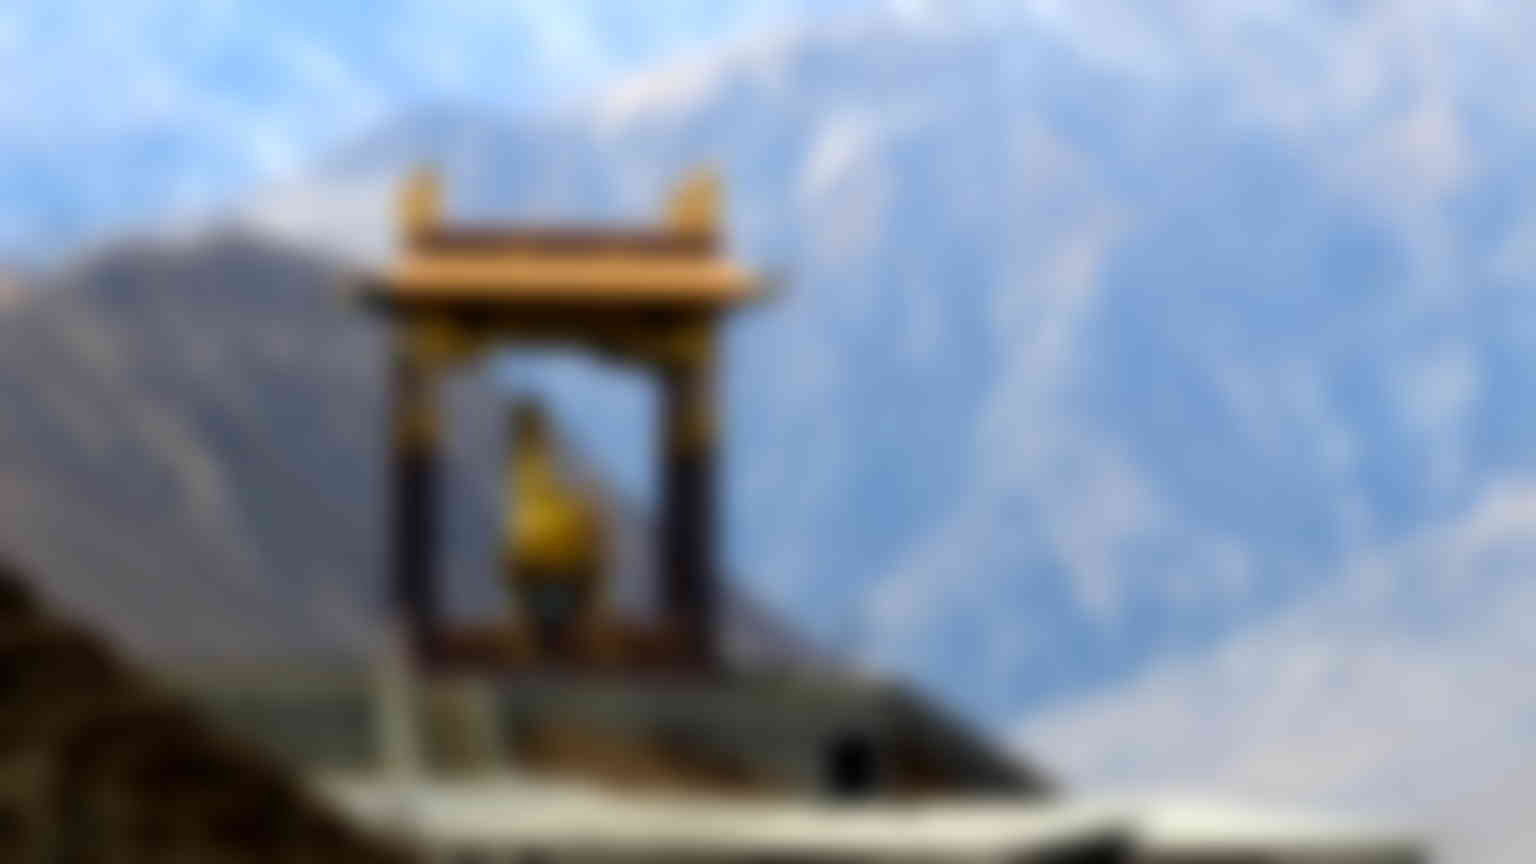 Shambhala: Tibetan Buddhism’s mythical hidden kingdom